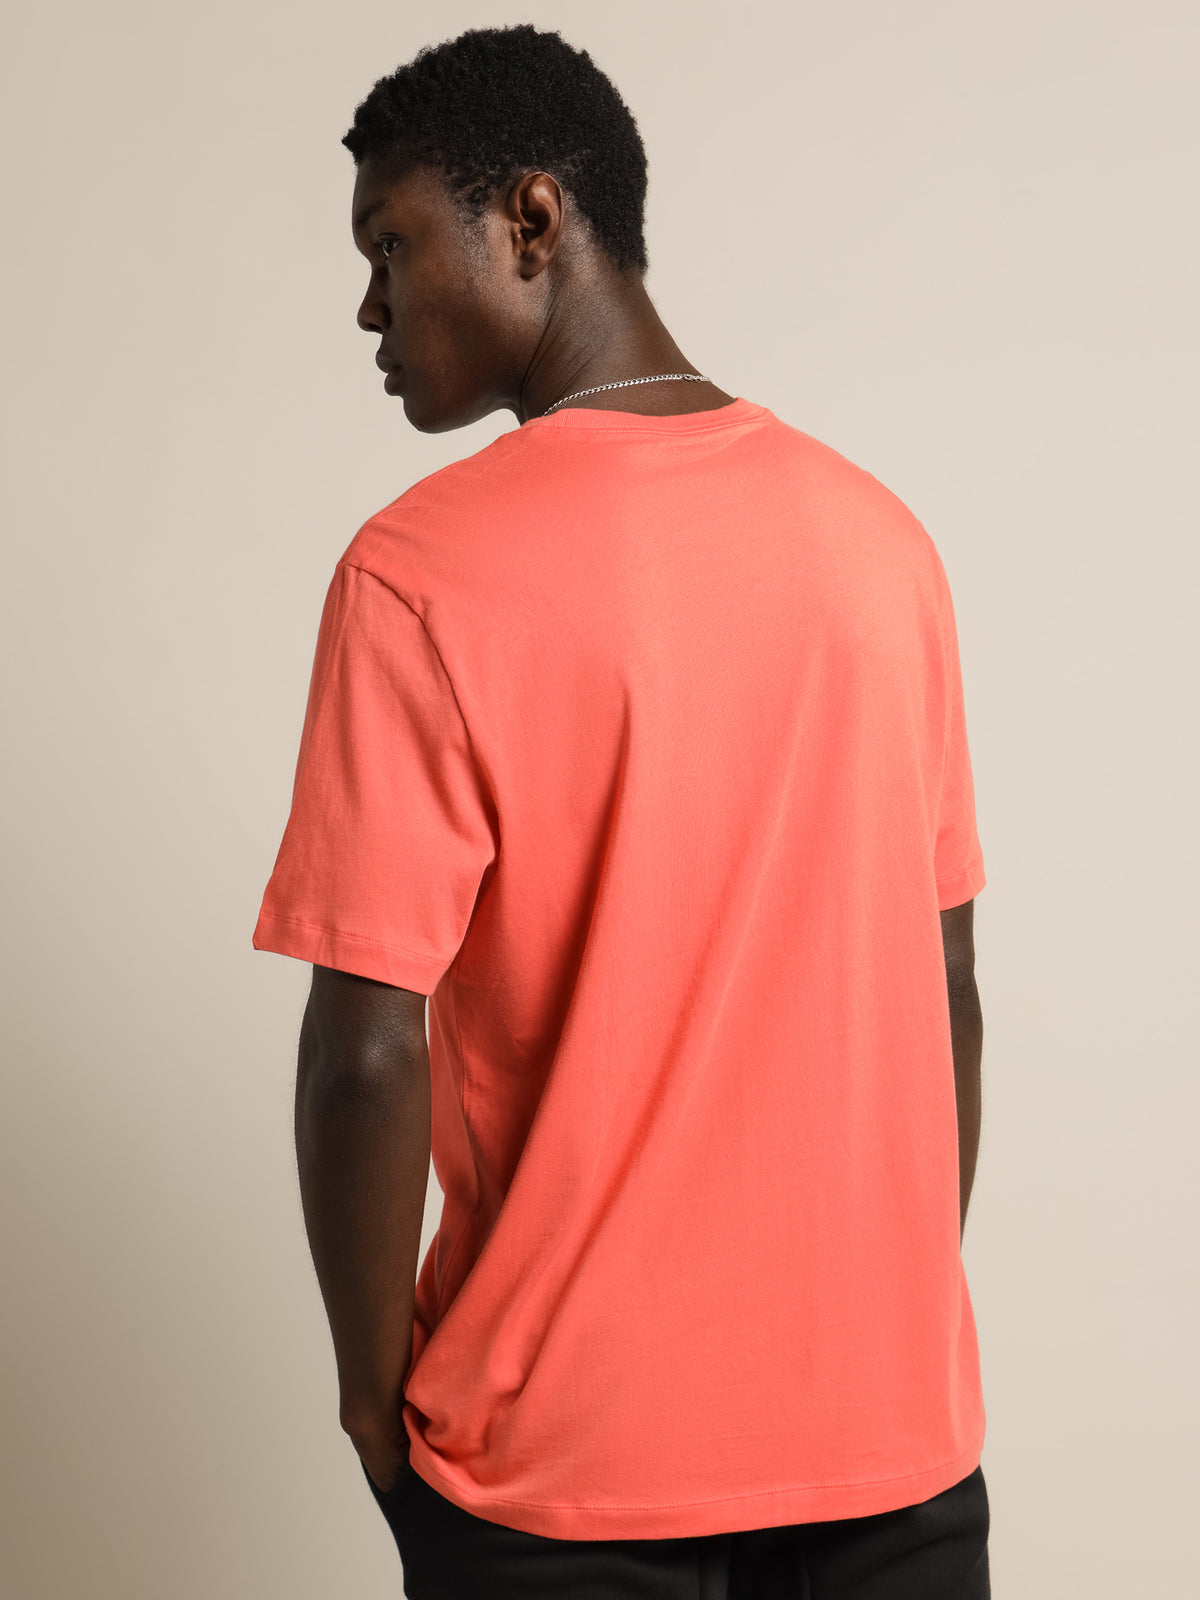 NSW Club T-Shirt in Magic Ember Orange